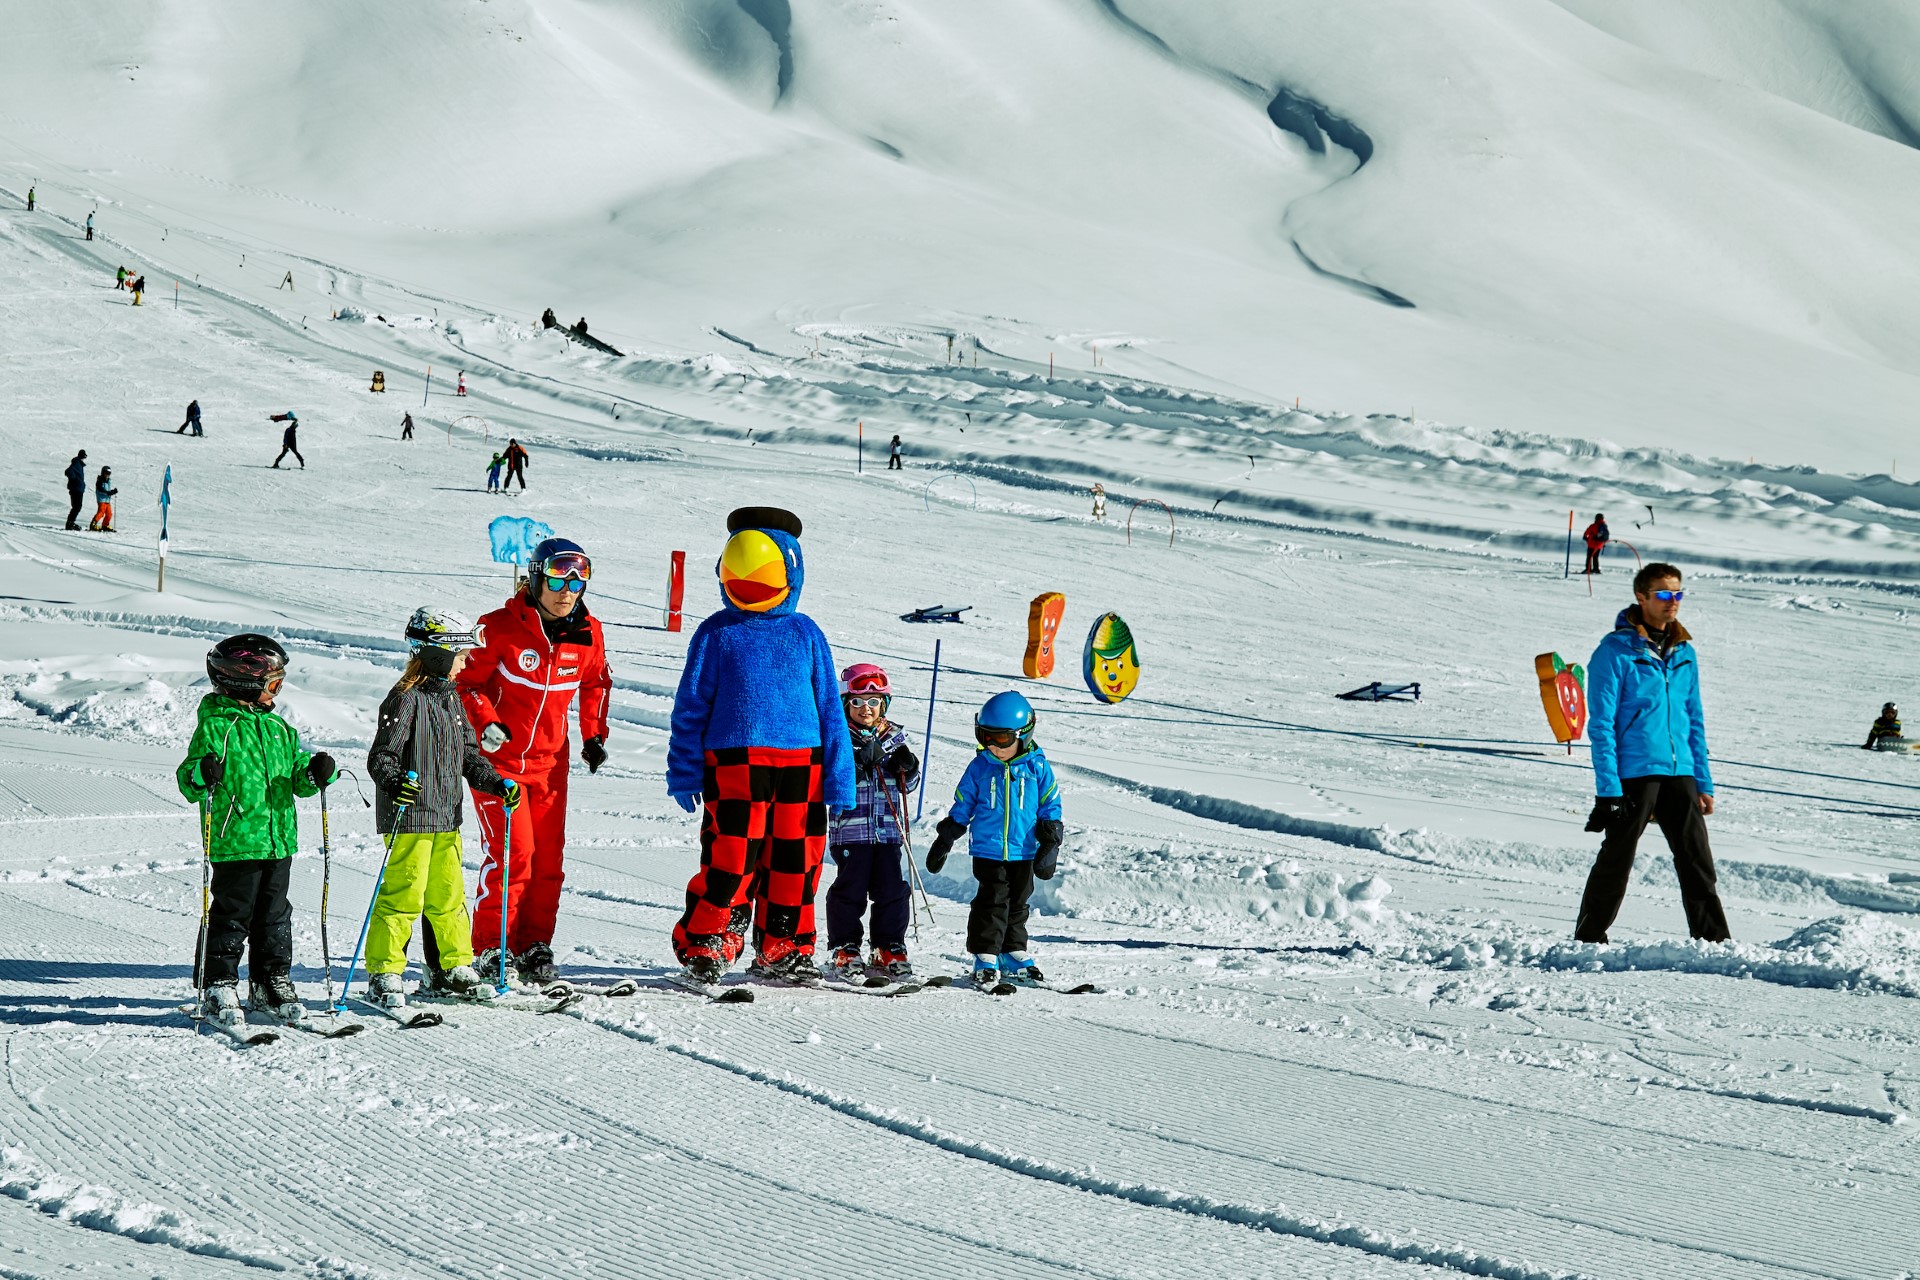 Skiunterricht mit Globi auf der Engstligenalp. Photo Credit: Tourismus Adelboden Lenk Kandersteg